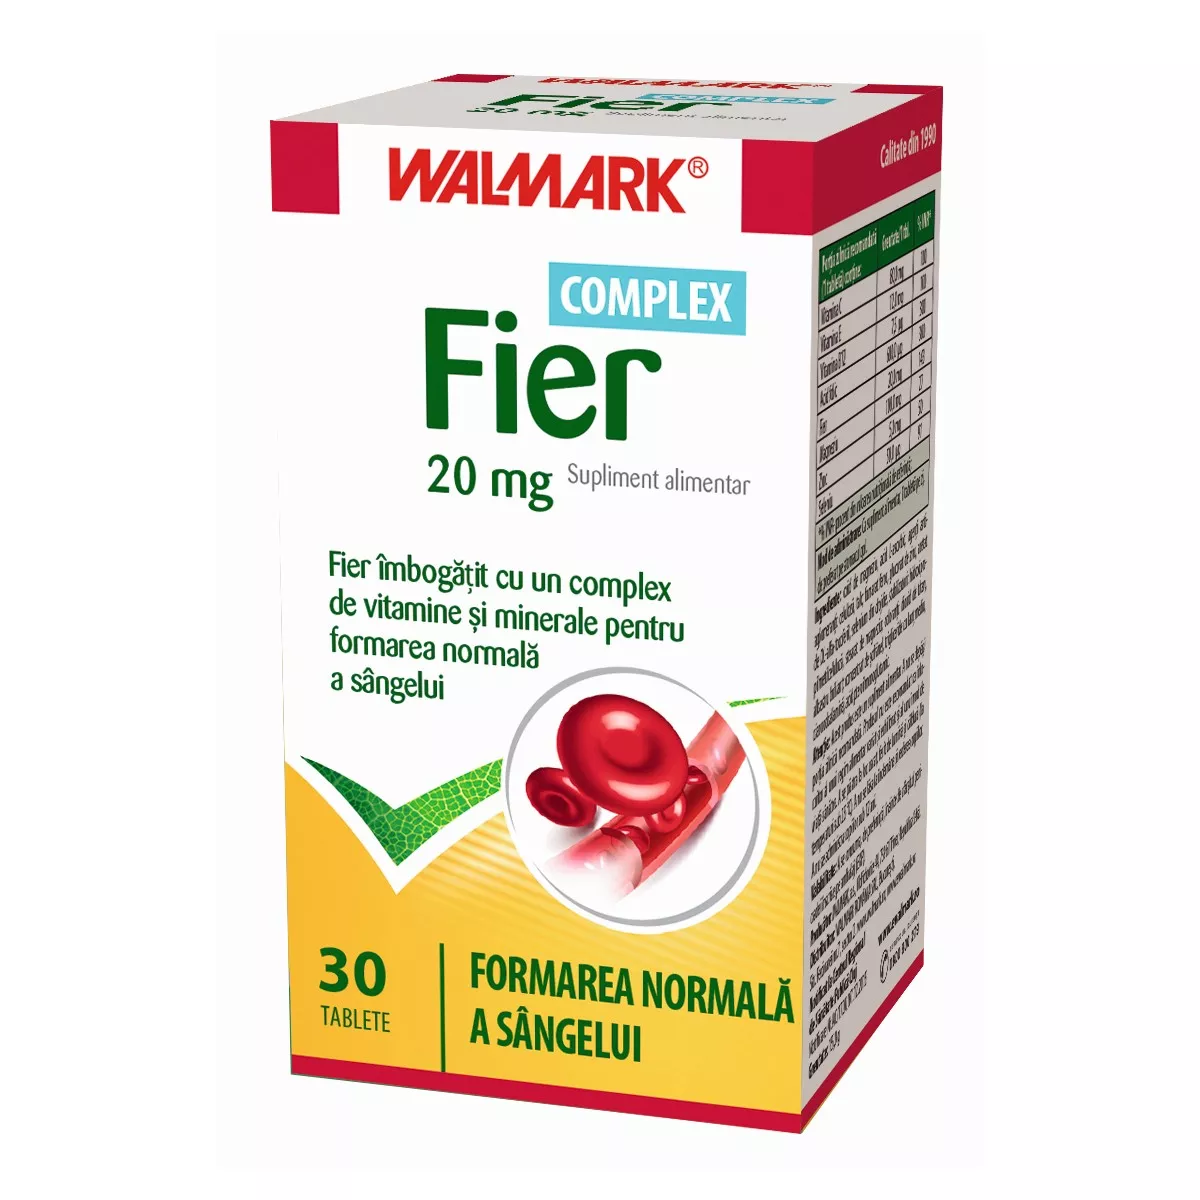 Fier Complex 20mg, 30 tablete, Walmark, [],remediumfarm.ro